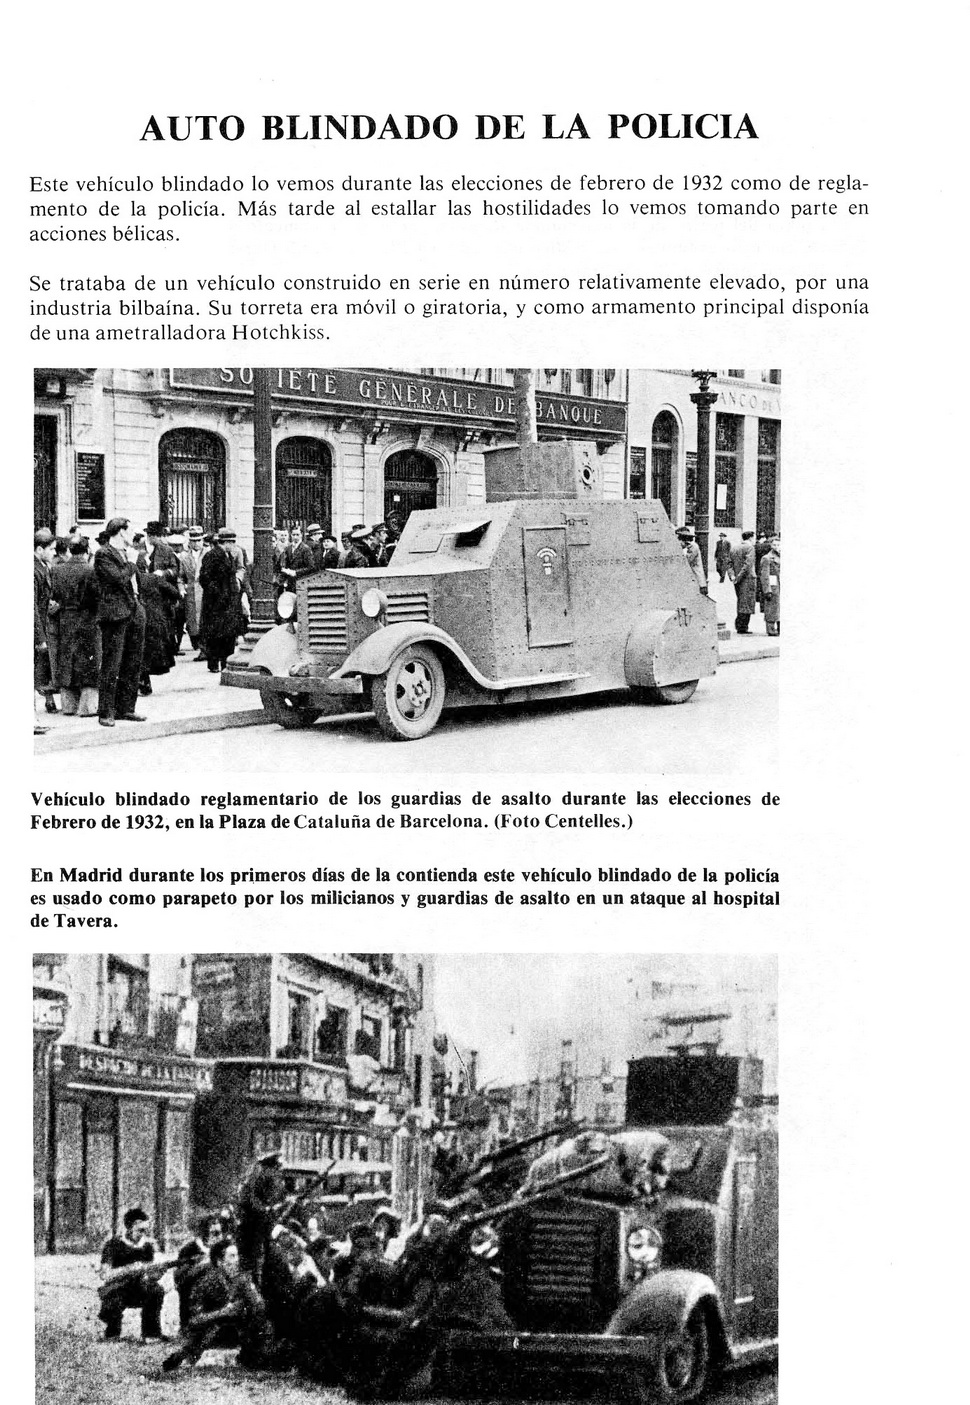 Carros De Combate Y Vehiculos Blindados De La Guerra 1936 1939 [F.C.Albert 1980]_Страница_057.jpg